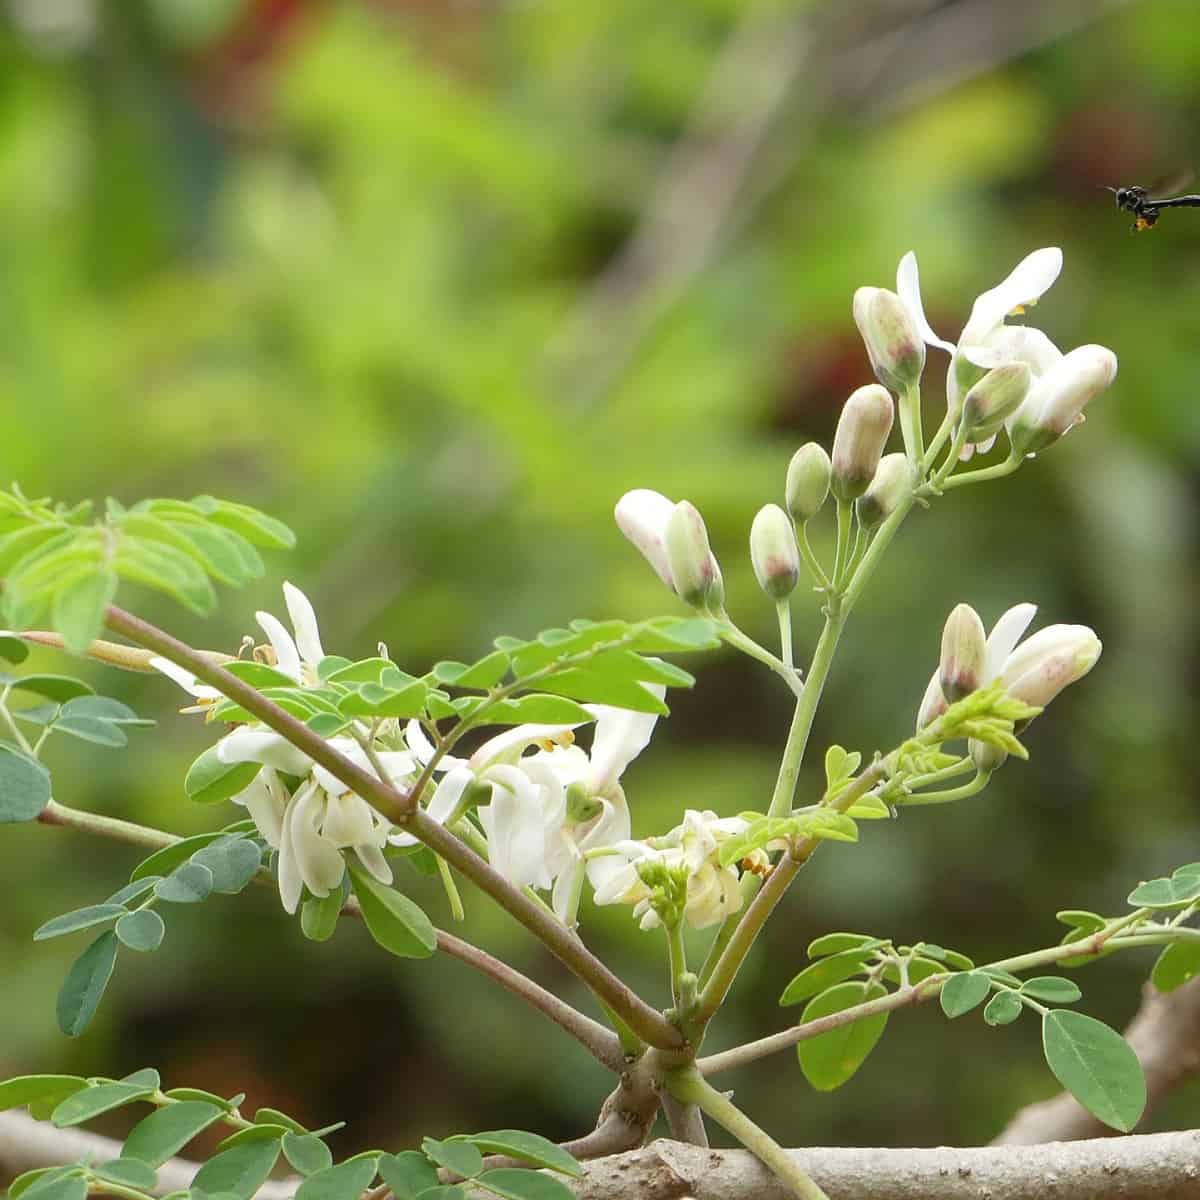 Moringa flower